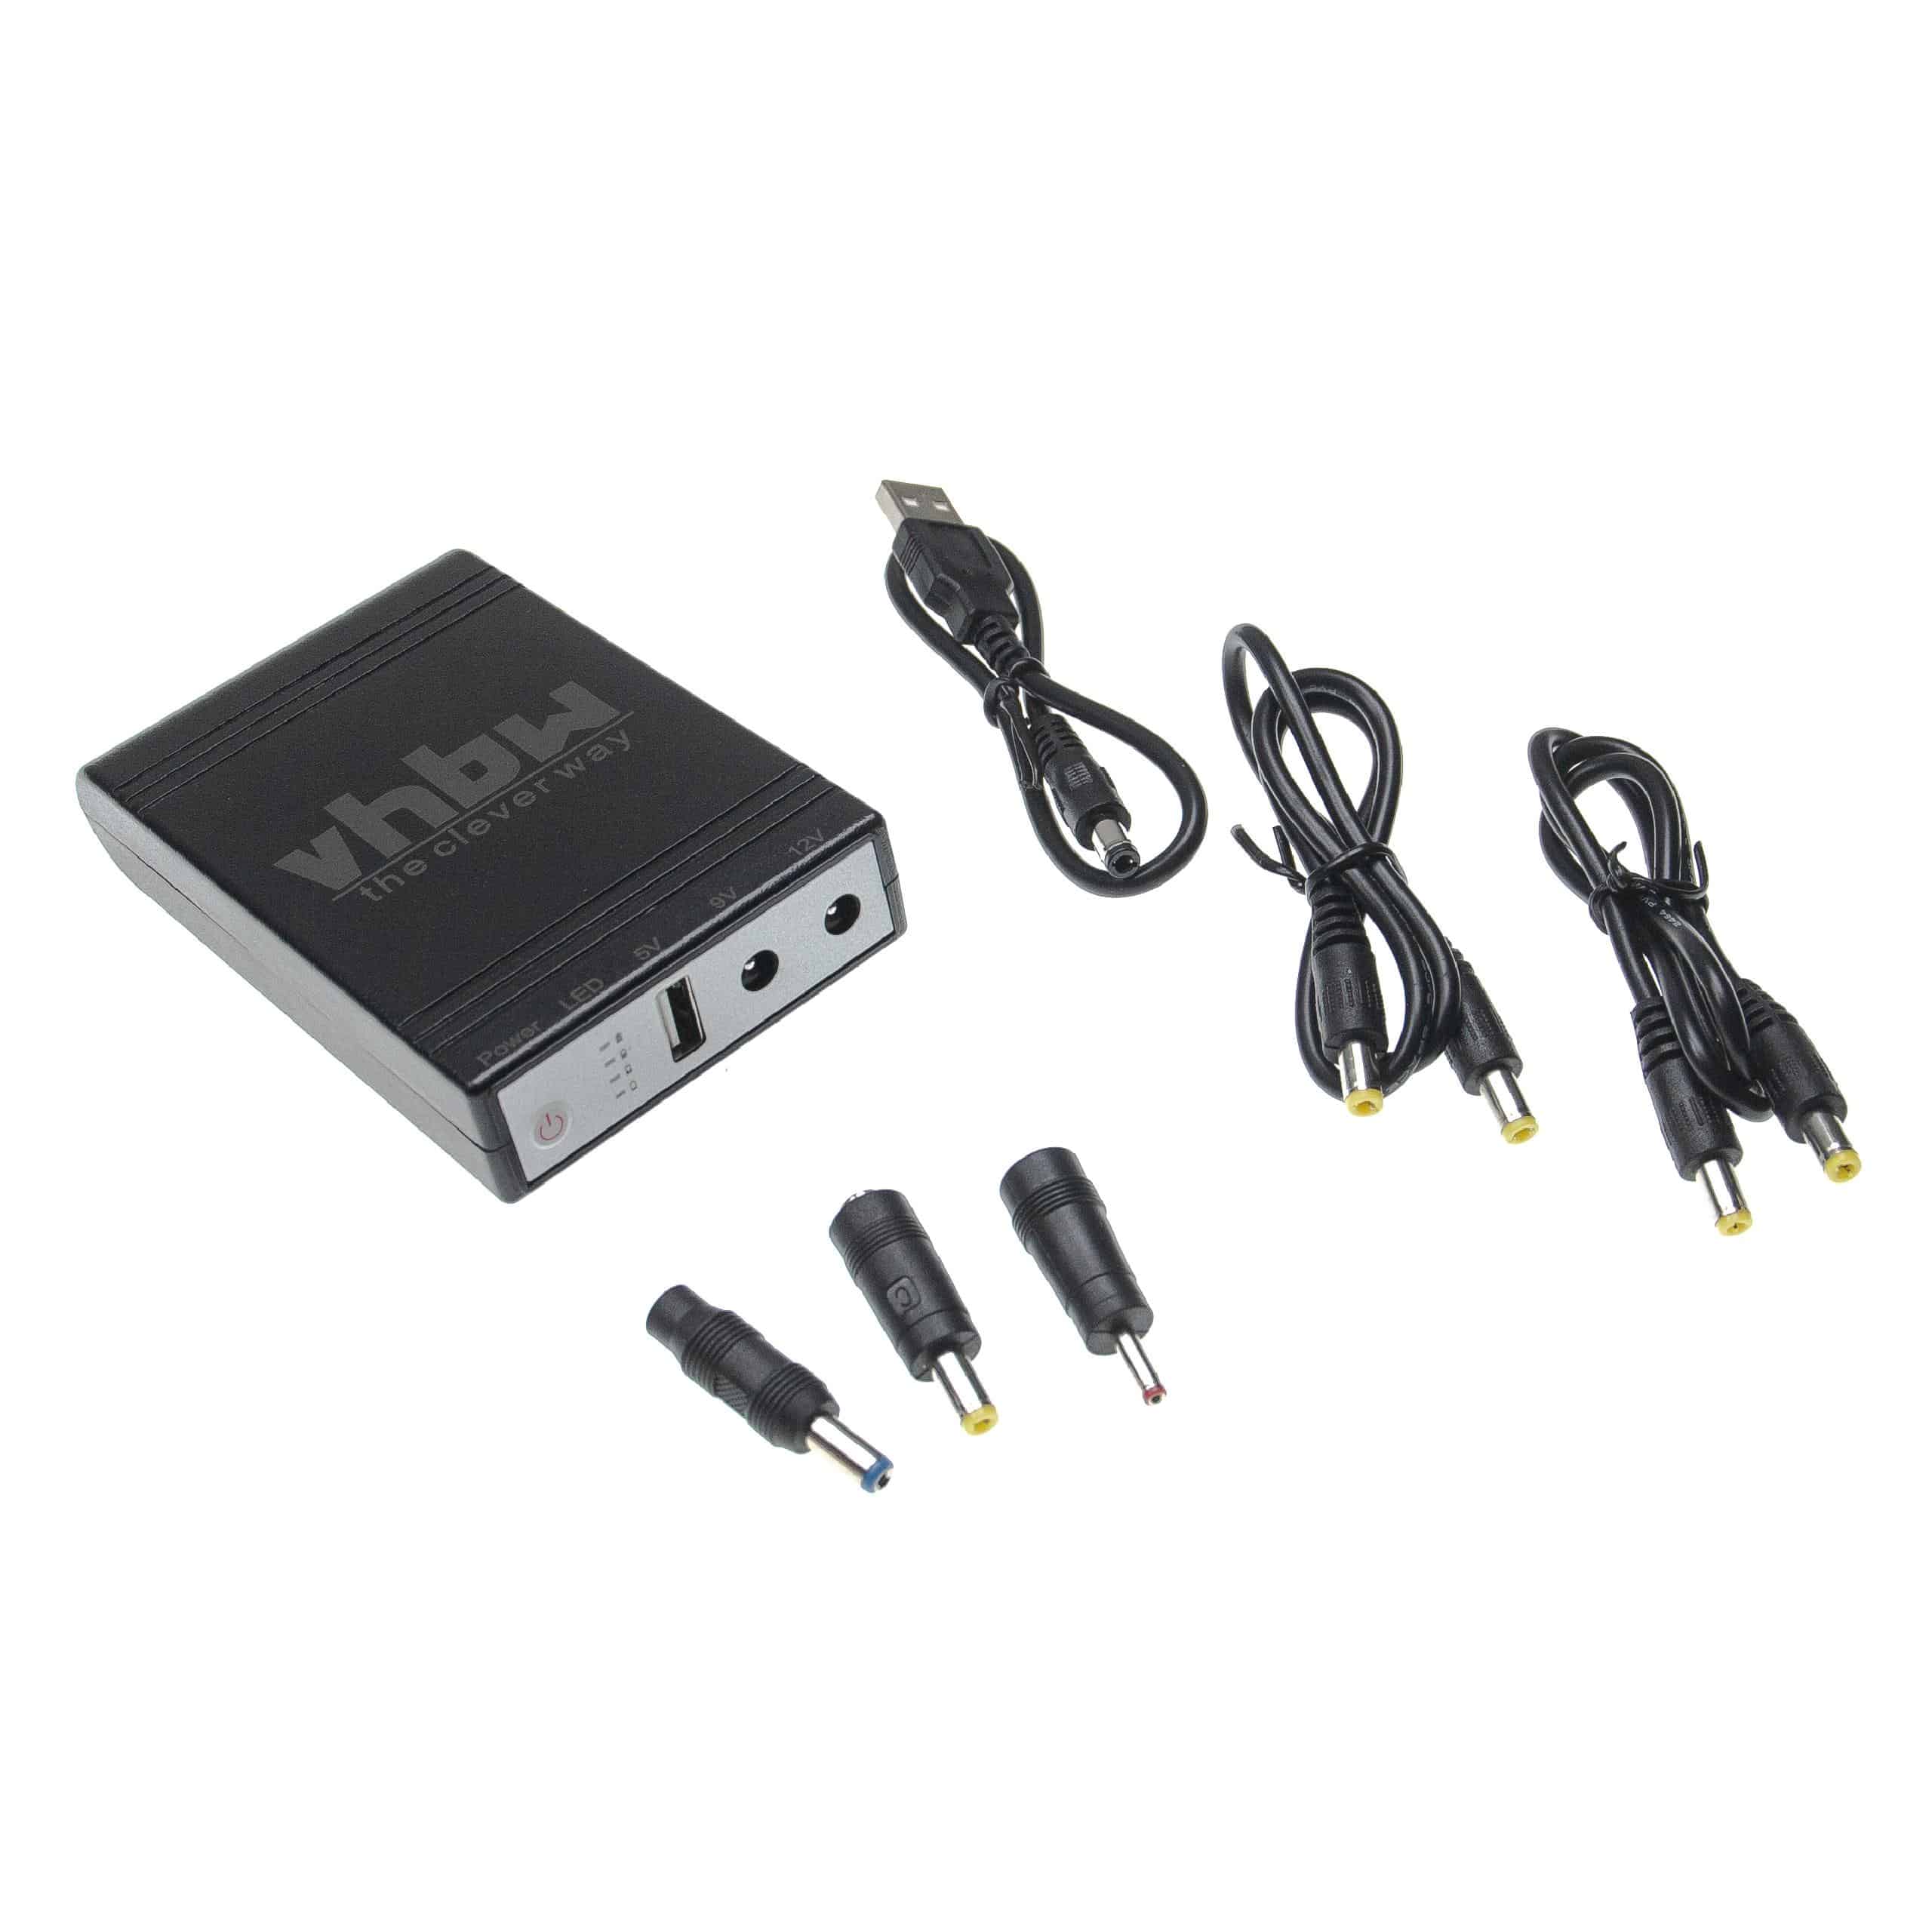 Zasilacz mini UPS do routera, komputera, kamery i innych urządzeń - USB 5 V / DC 9 V / DC 12 V, 1,0 A